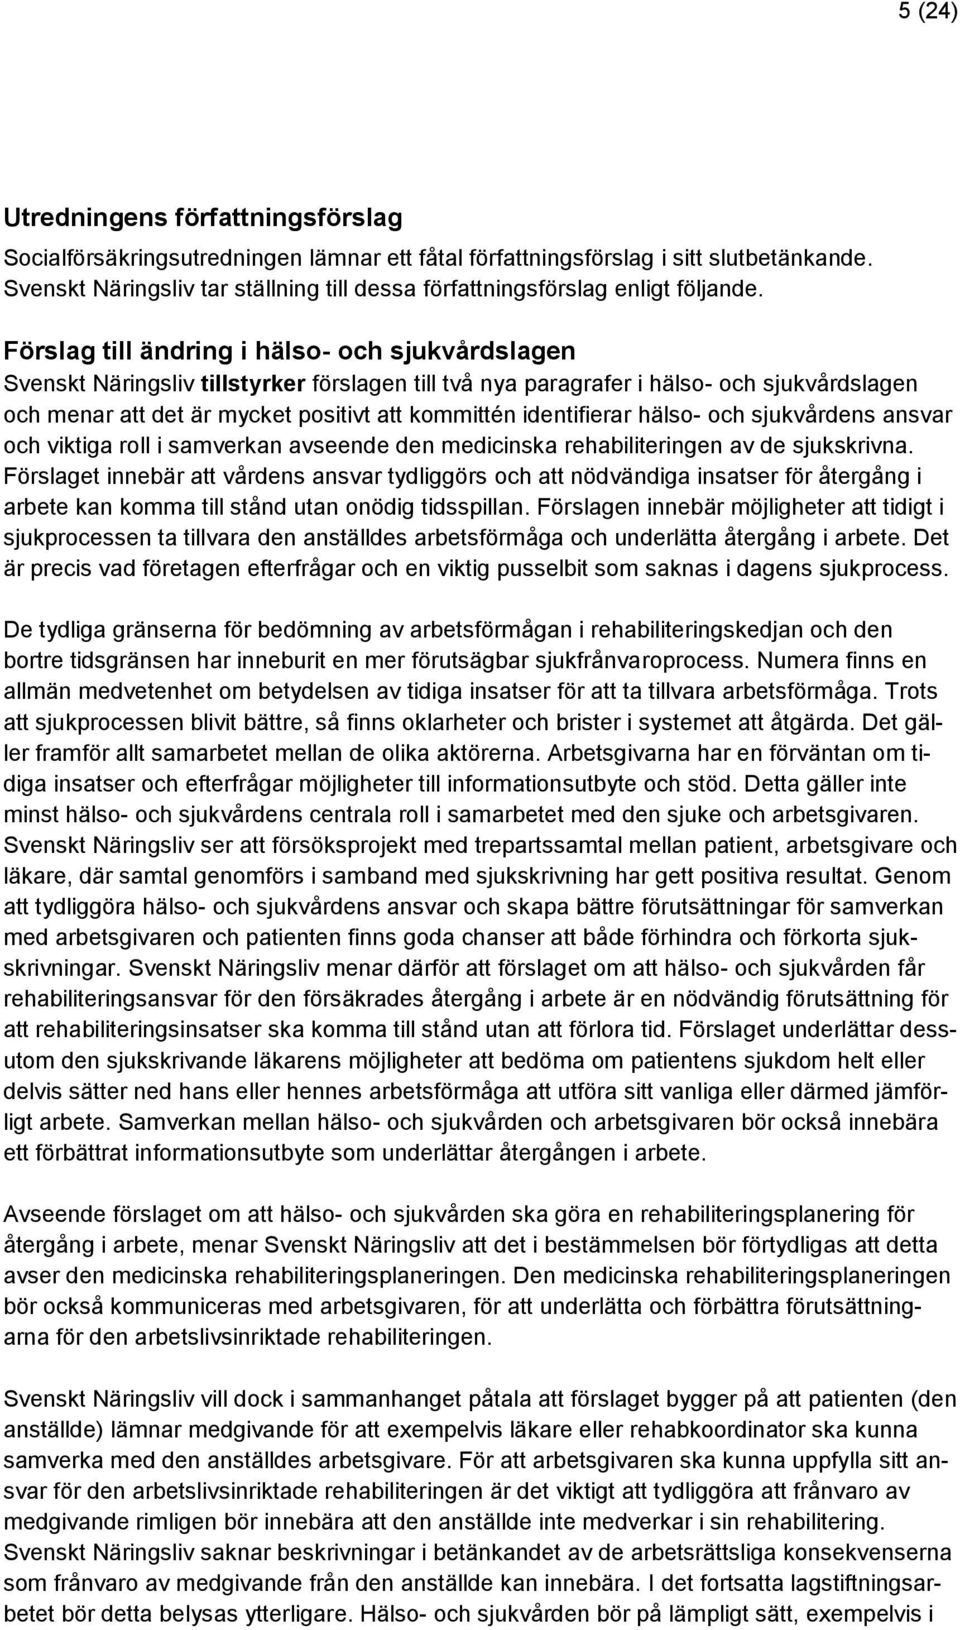 Förslag till ändring i hälso- och sjukvårdslagen Svenskt Näringsliv tillstyrker förslagen till två nya paragrafer i hälso- och sjukvårdslagen och menar att det är mycket positivt att kommittén